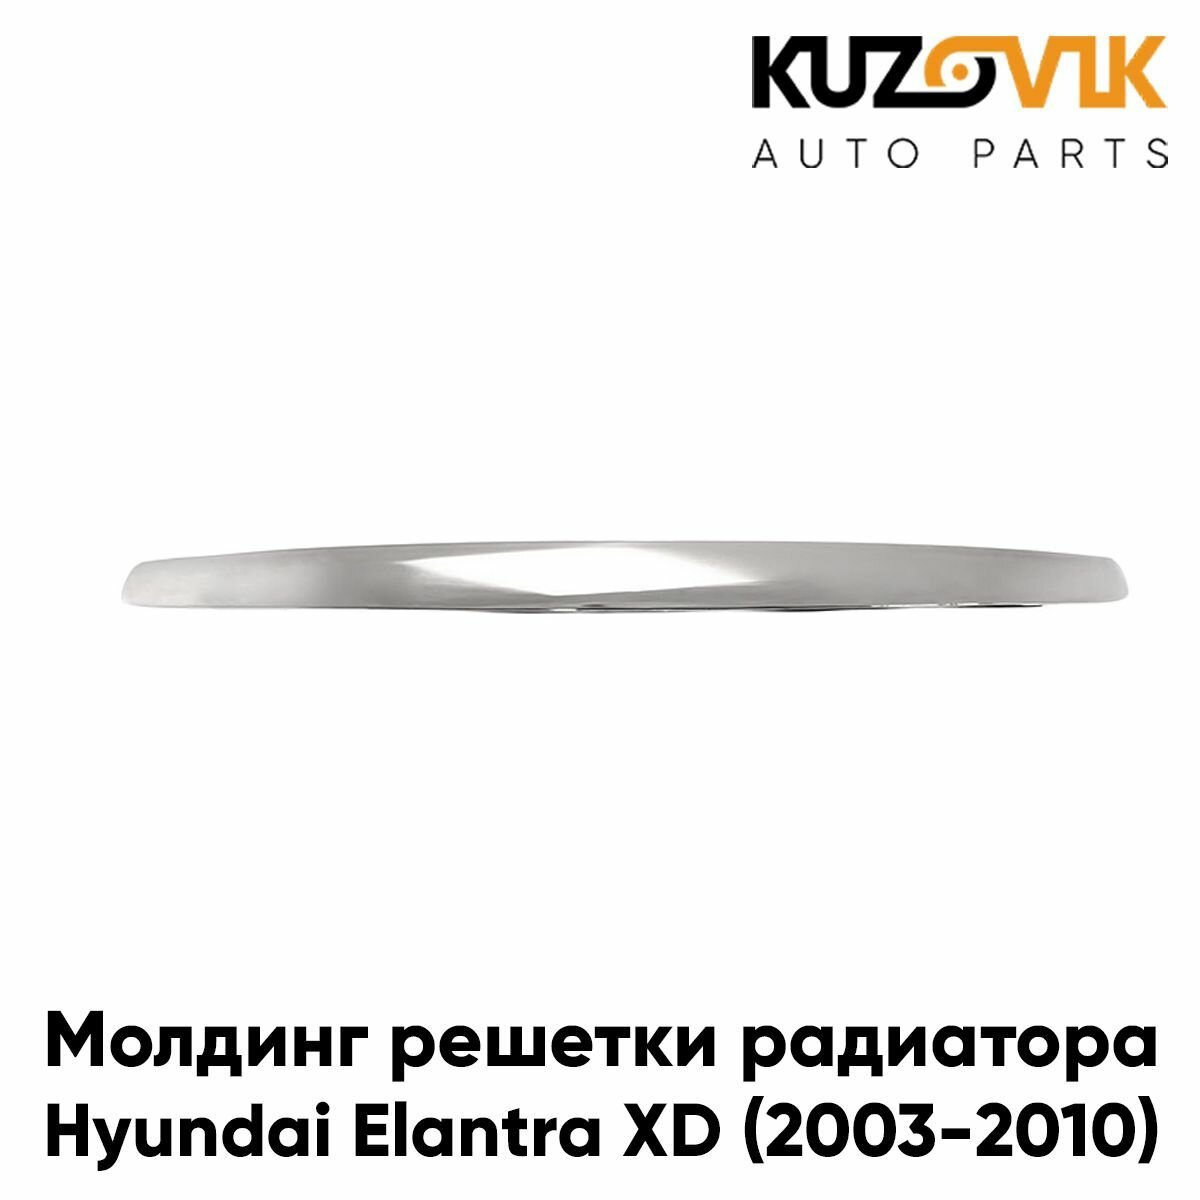 Молдинг решетки радиатора верхний хром Hyundai Elantra 3 (2004-)